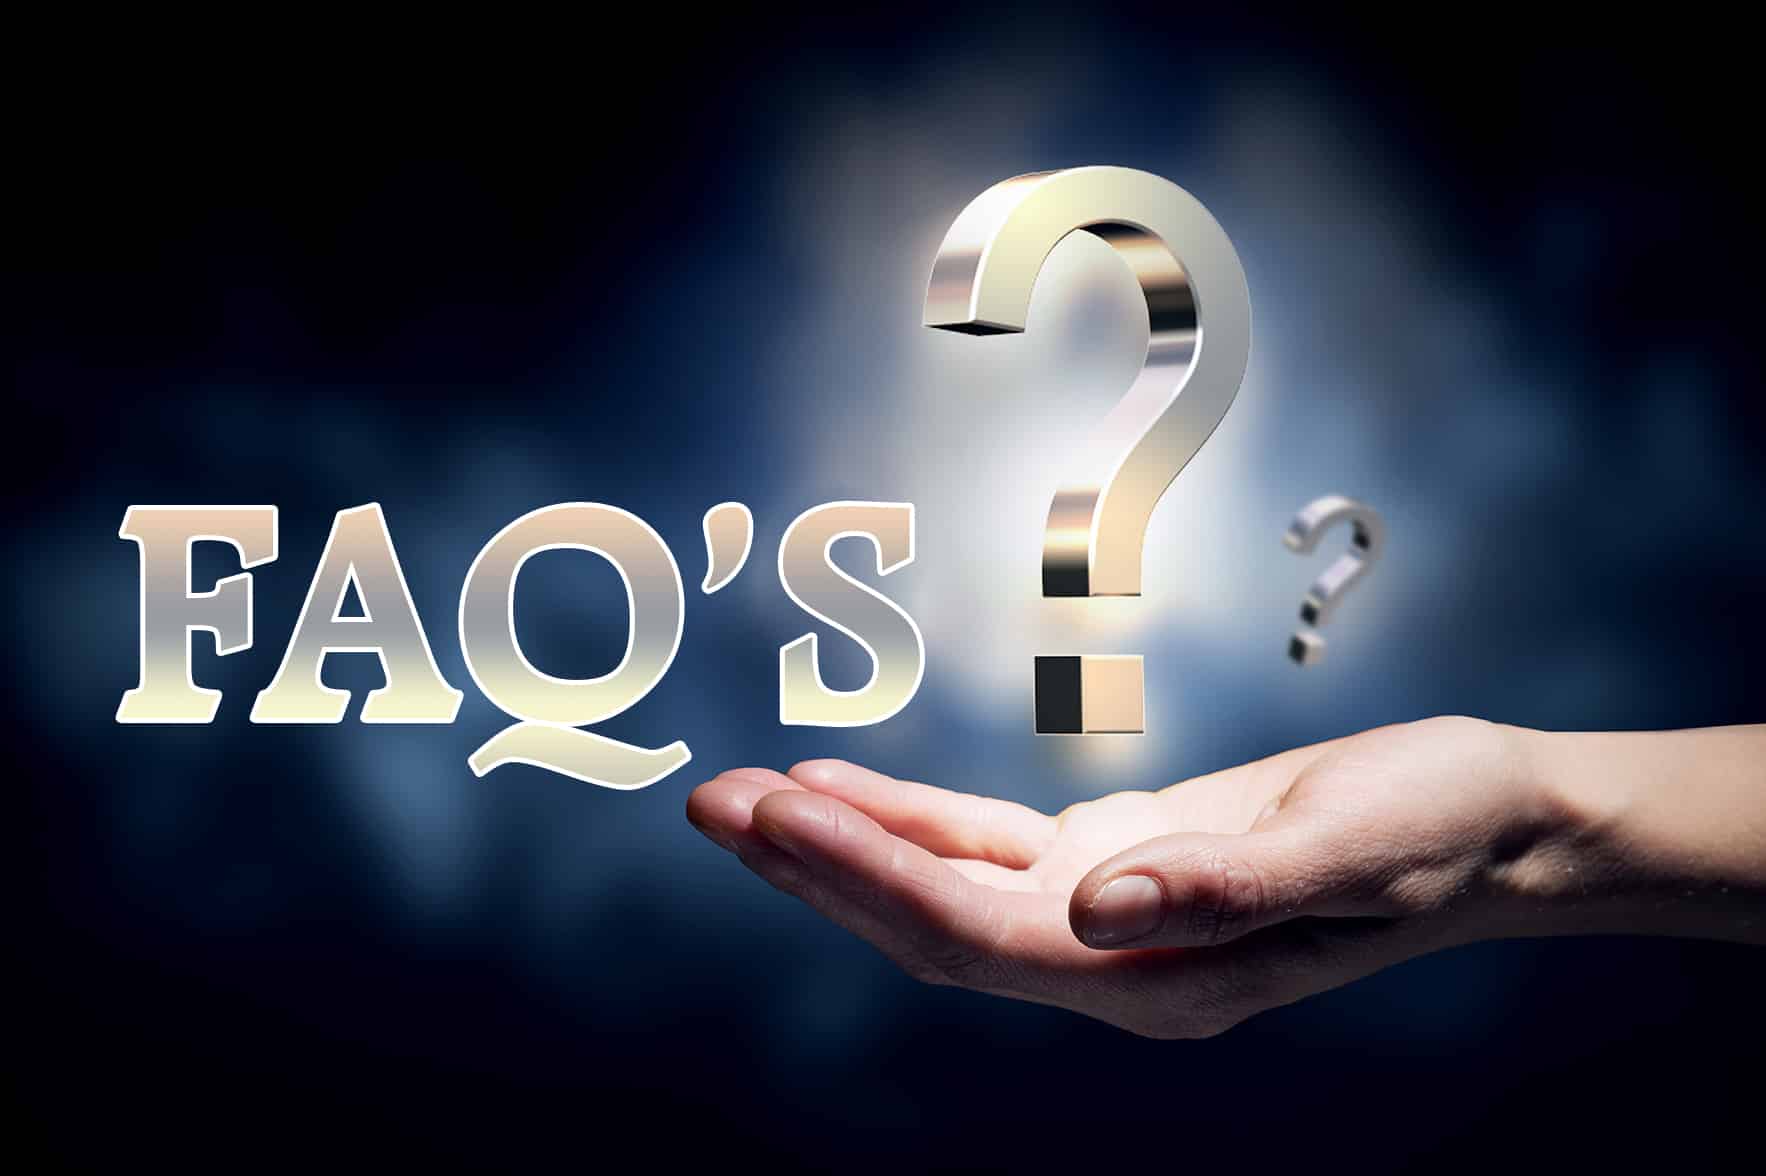 Często zadawane pytania (FAQ)